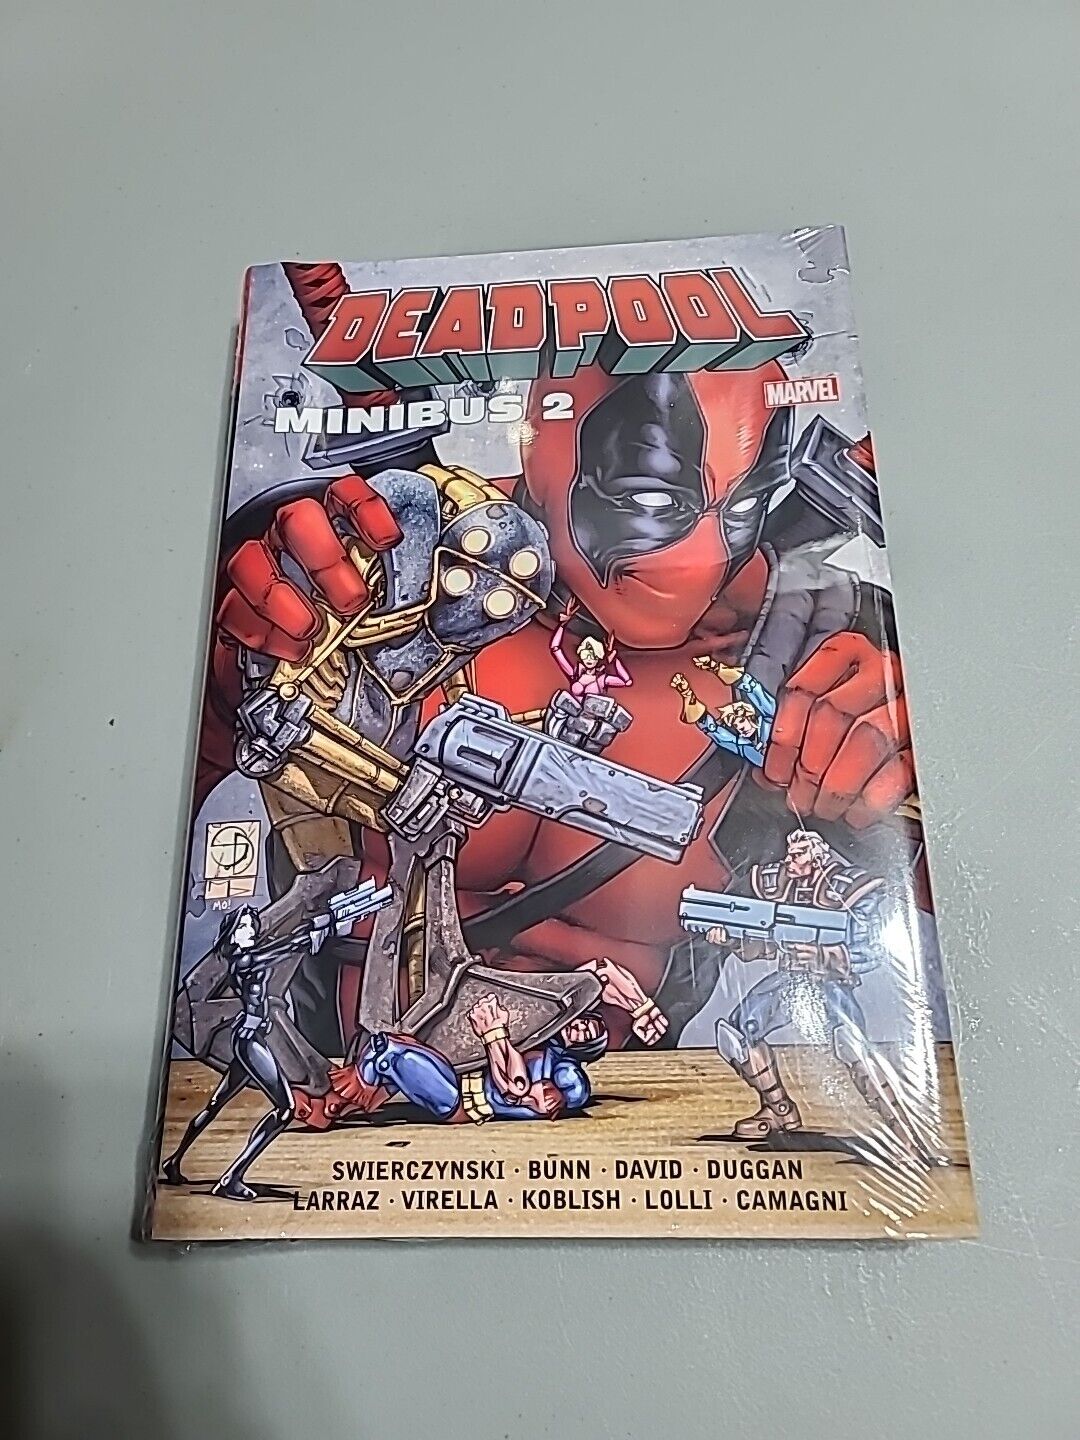 Deadpool Minibus Volume 2 Omnibus New Marvel Comics HC Hardcover Sealed